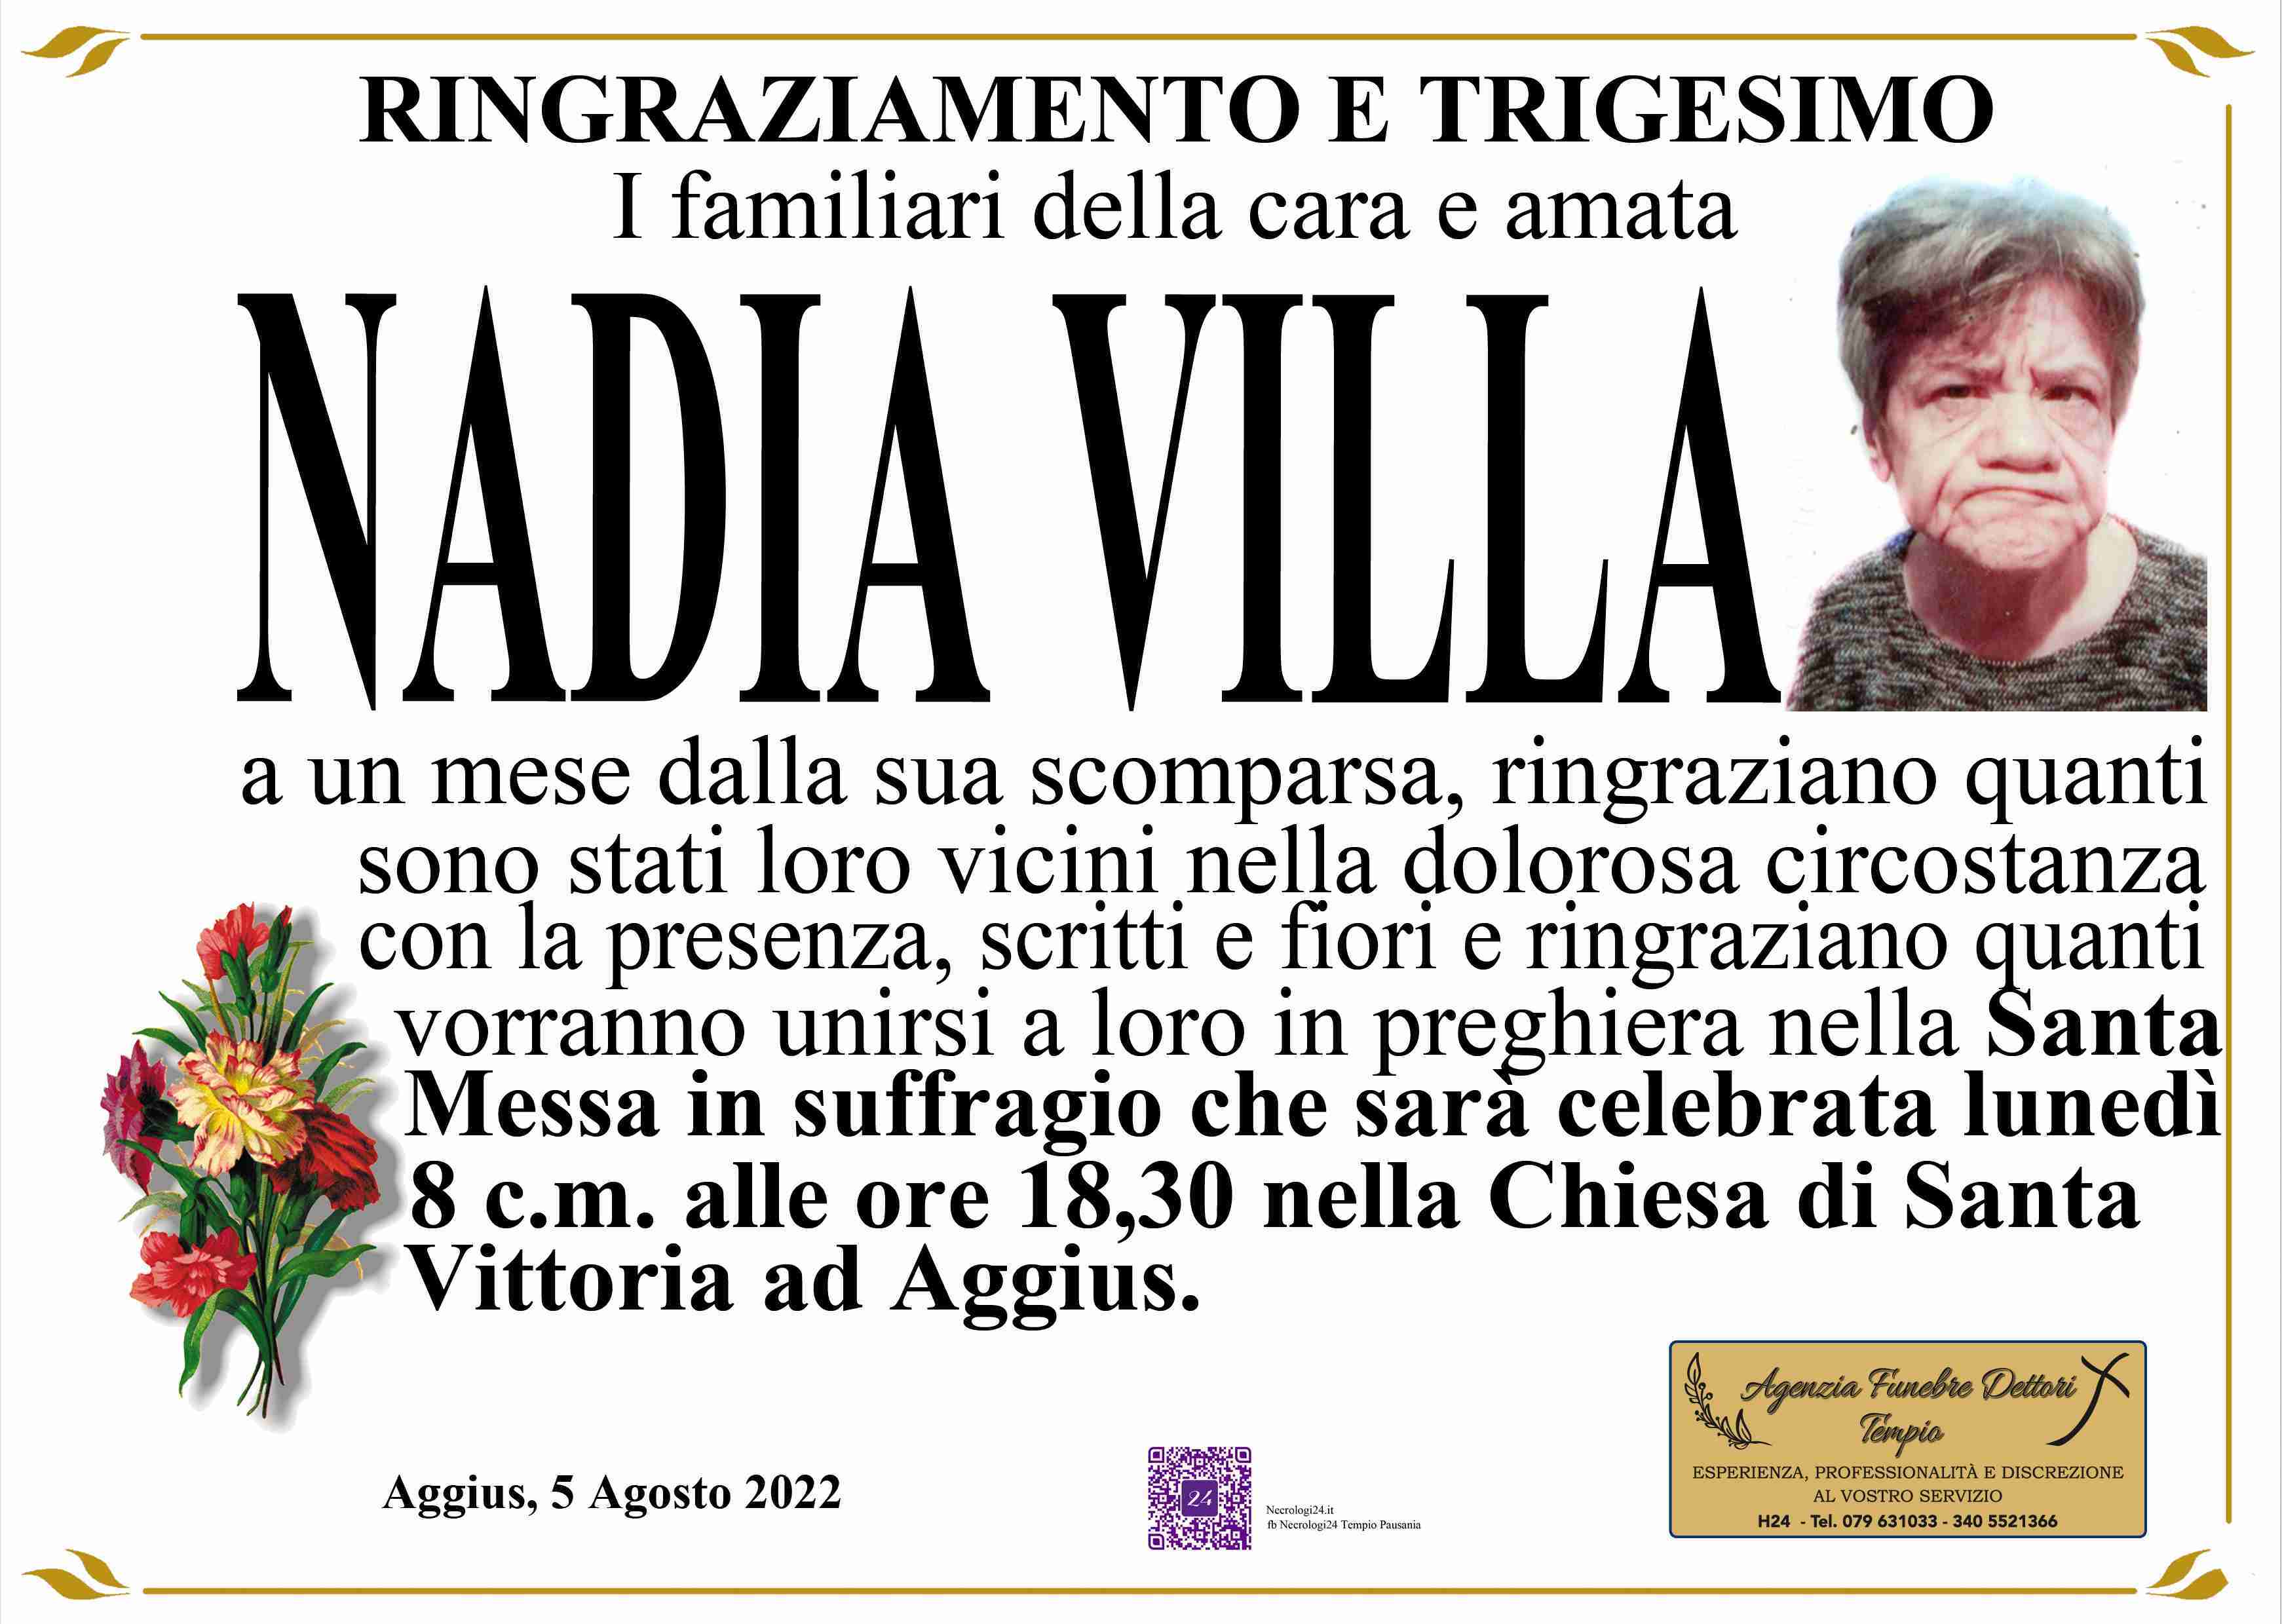 Ornella Nadia Villa